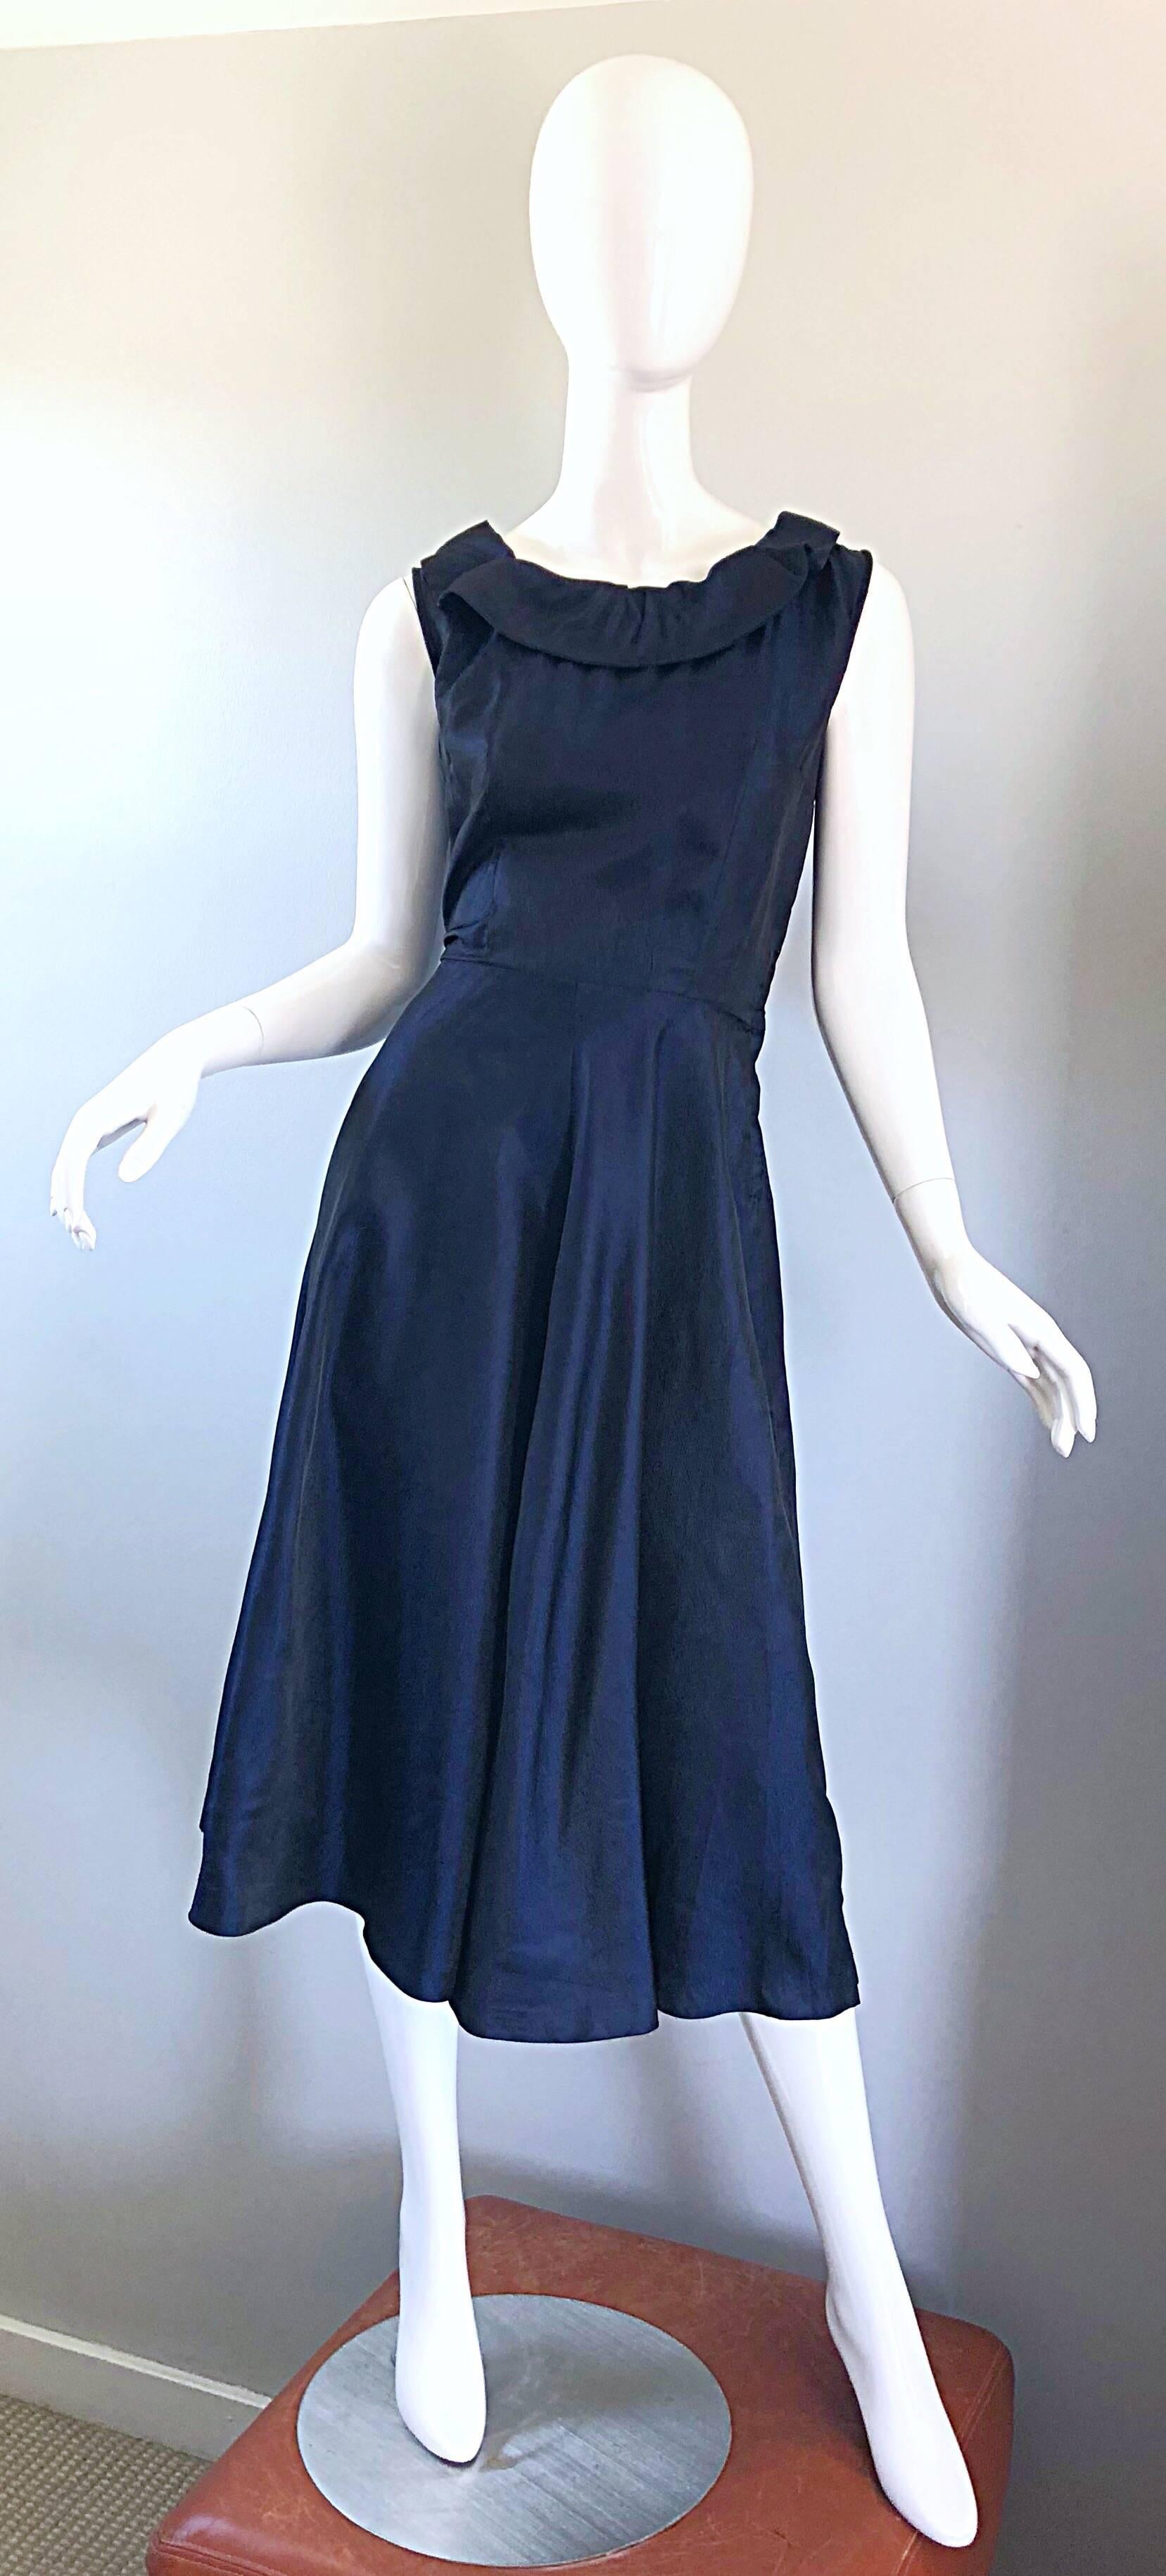 Magnifique robe en soie bleu marine des années 50 ! Comporte un corsage ajusté avec des liens chics dans le haut du dos. Jupe complète indulgente. Fermeture éclair en métal sur le corsage latéral. Extrêmement bien construit avec un grand souci du